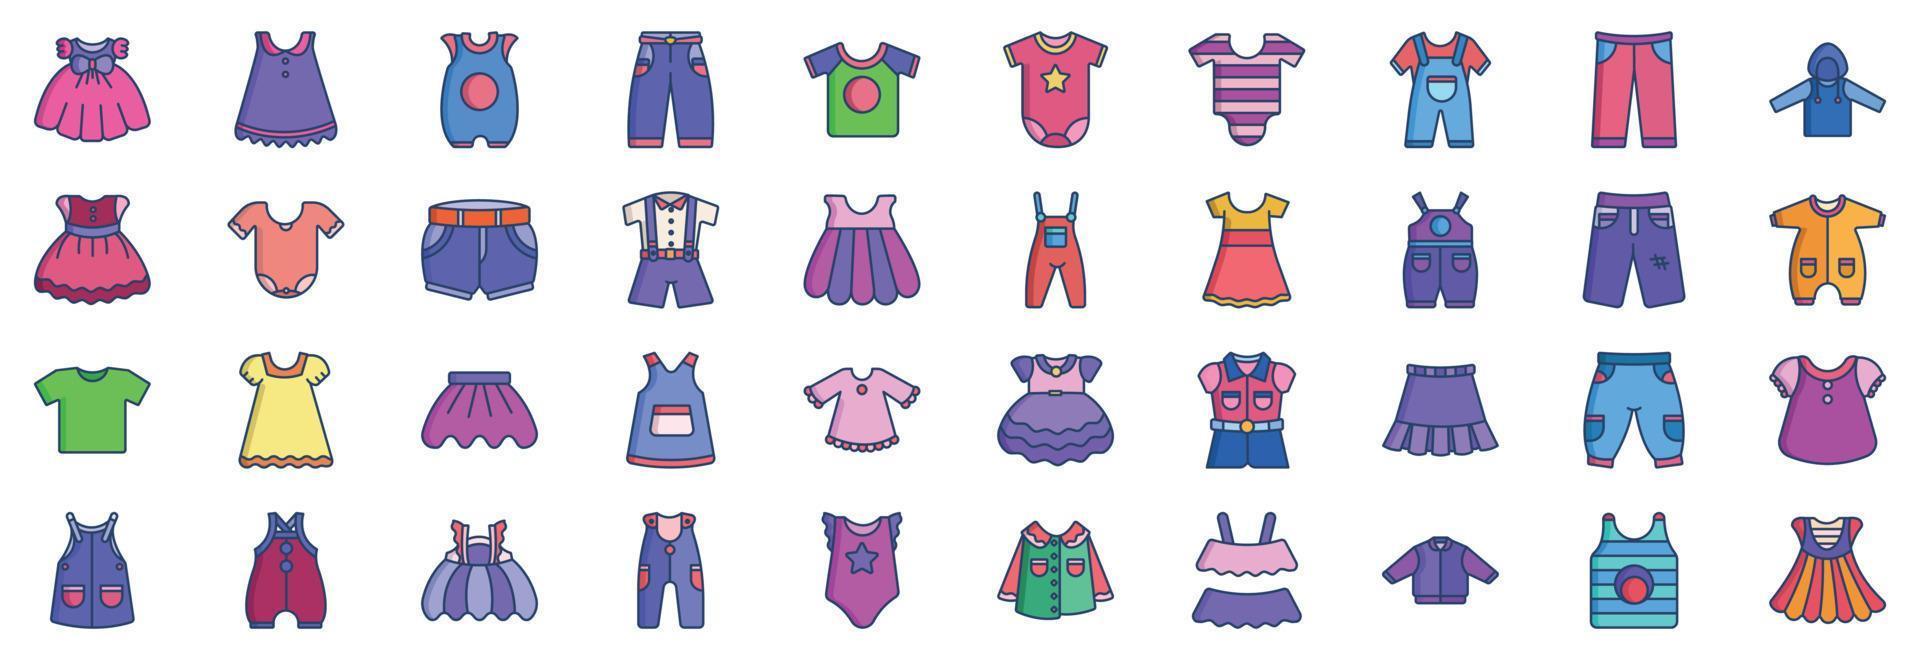 verzameling van pictogrammen verwant naar kinderen kleding en jurk, inclusief pictogrammen Leuk vinden kort, broek, kort, en meer. vector illustraties, pixel perfect reeks